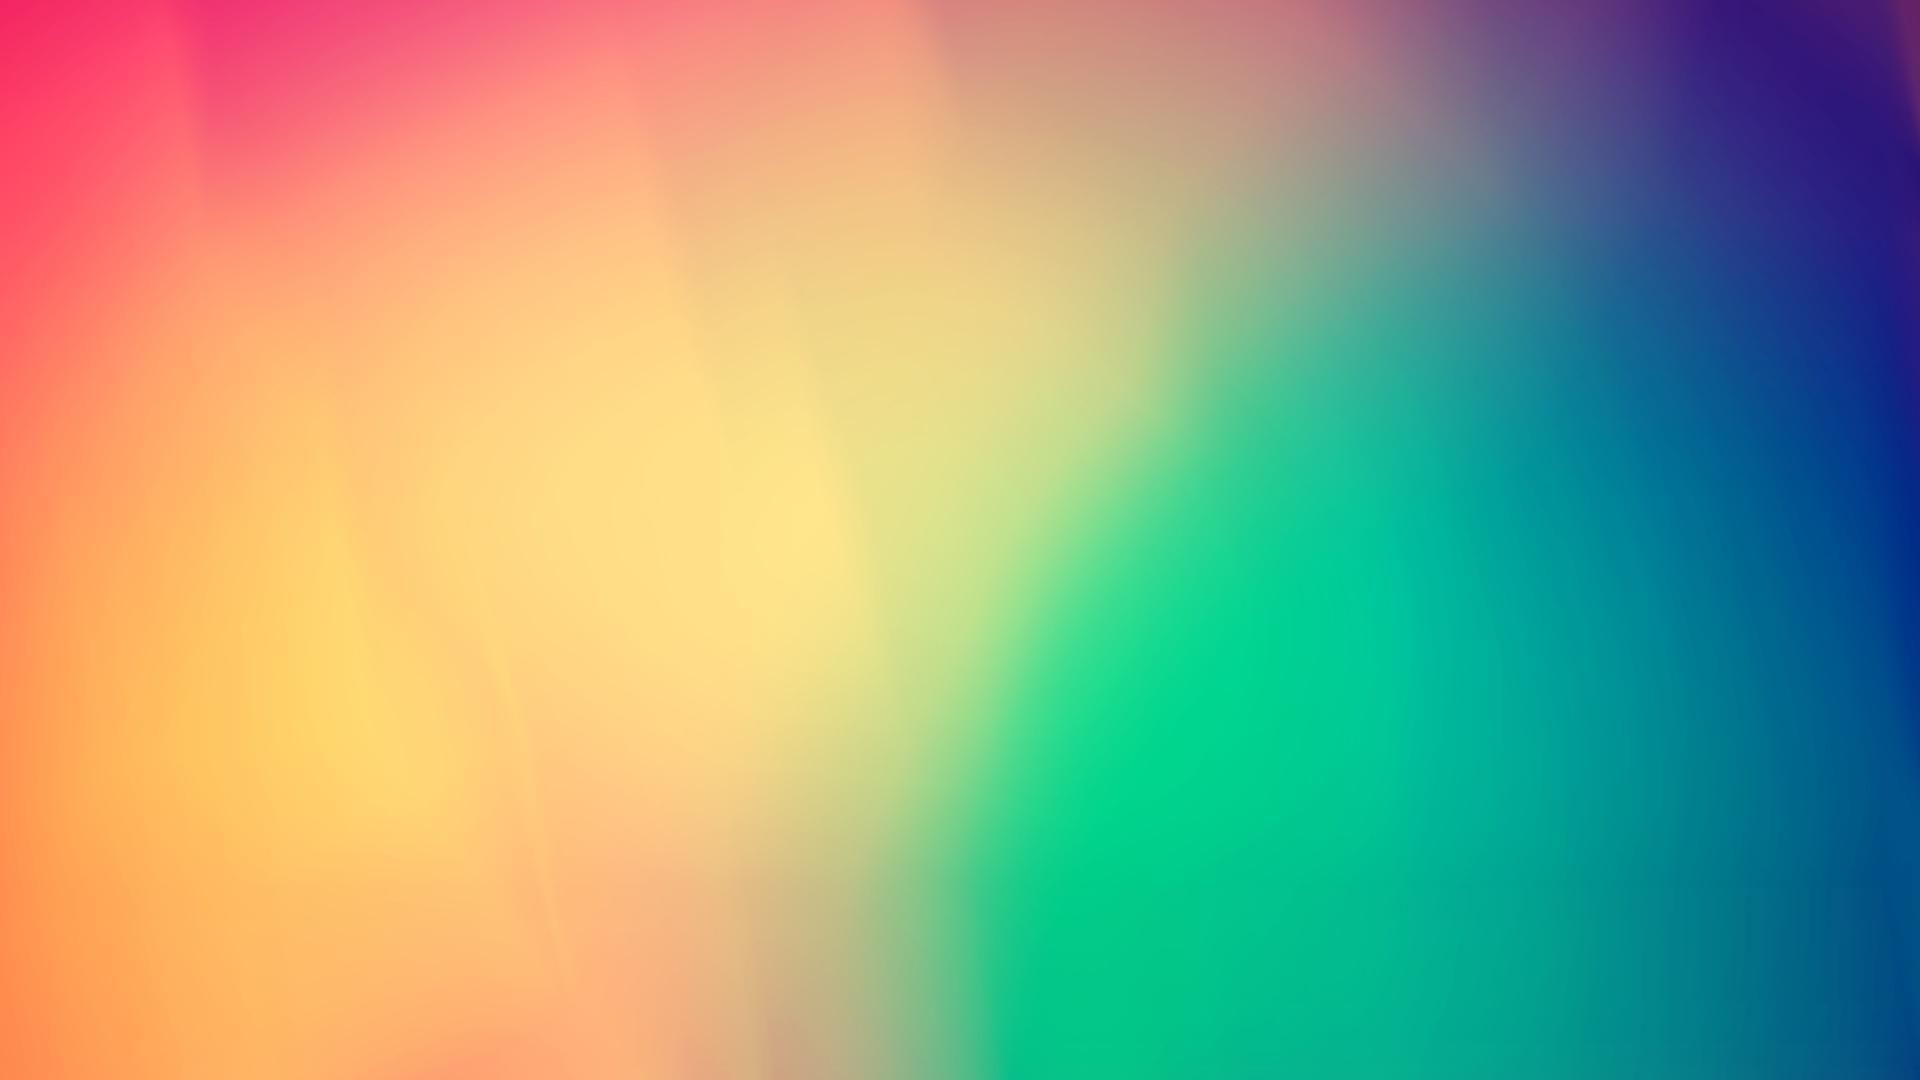 1920x1080 xpx color backgrounds curve illusion with plain light purple background